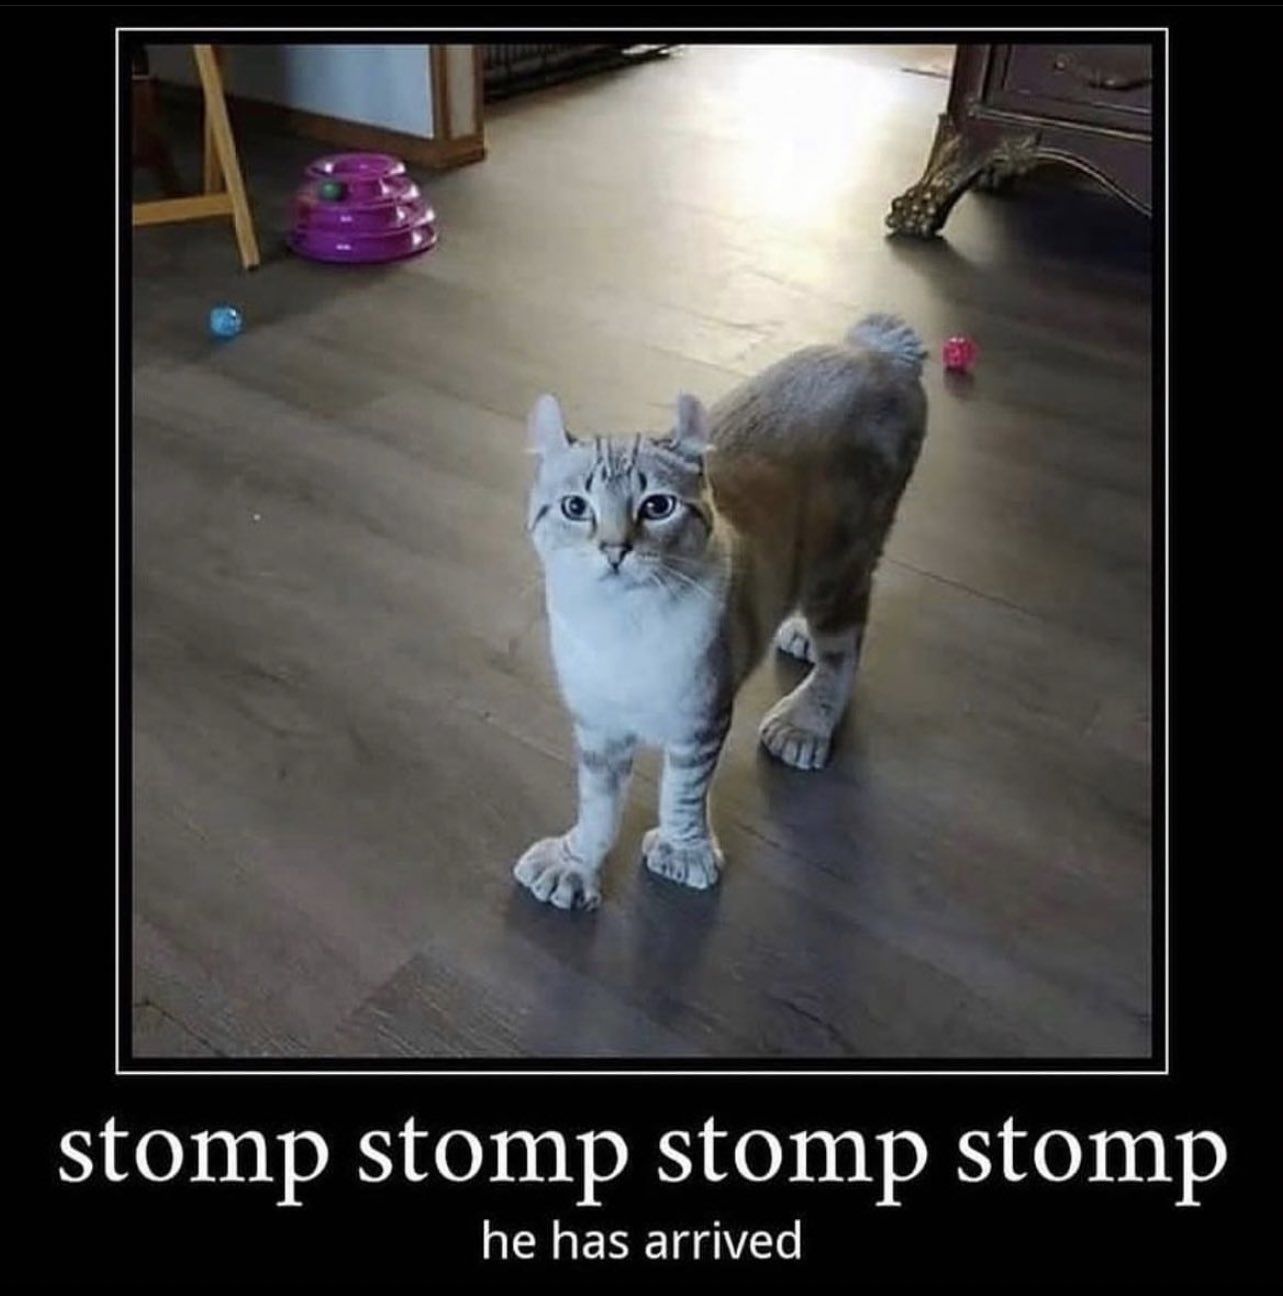 *stomp stomp*